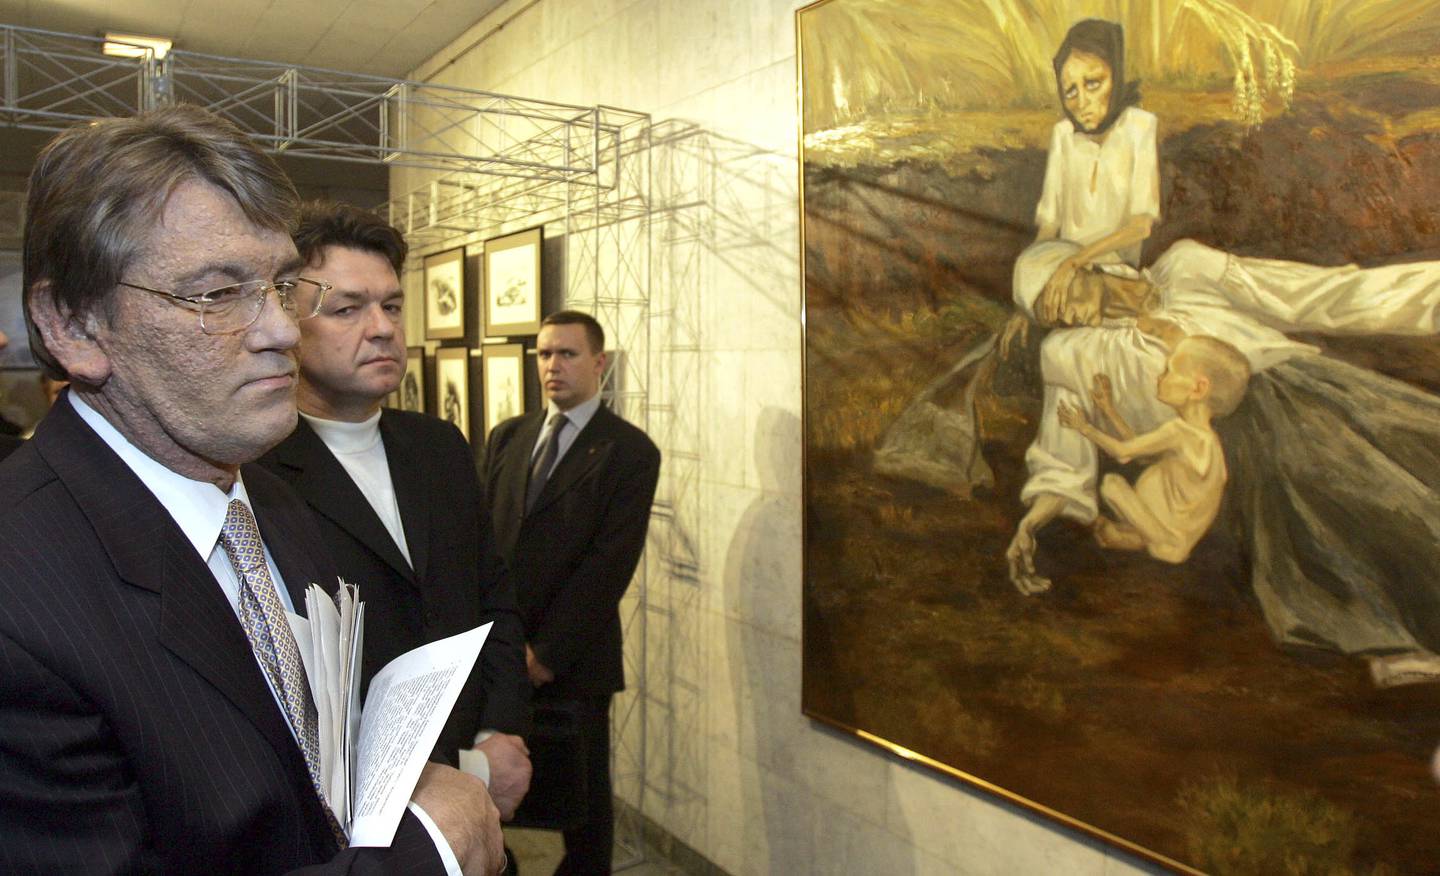 Ukrainas daværende president  Viktor Jusjtsjenko åpnet i 2005 en utstilling for å markere sultkatastrofen i Ukraina i 1932-1933.